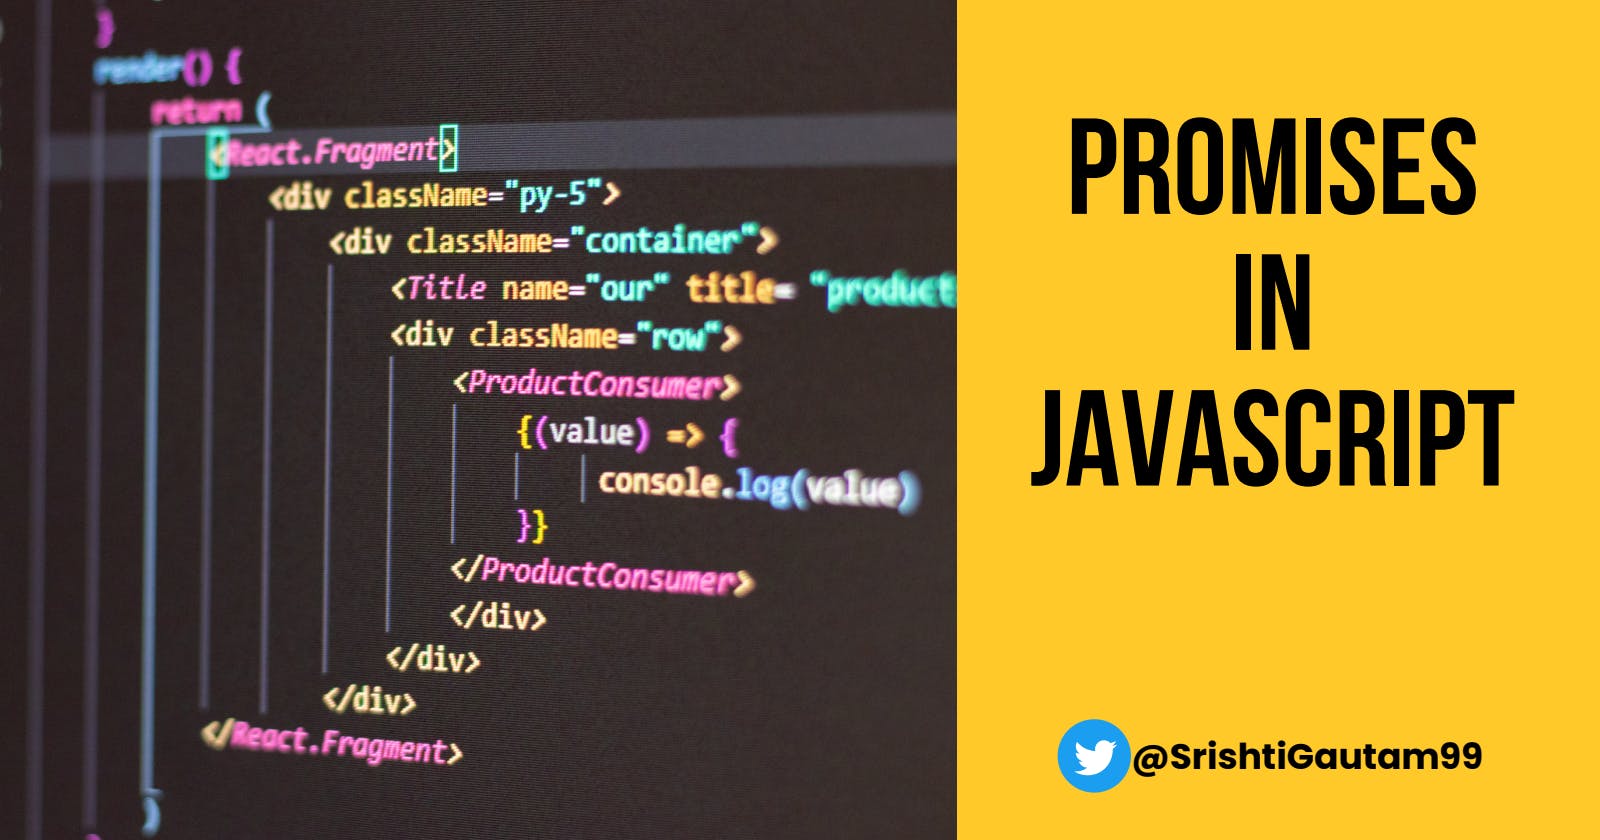 Promises in JavaScript